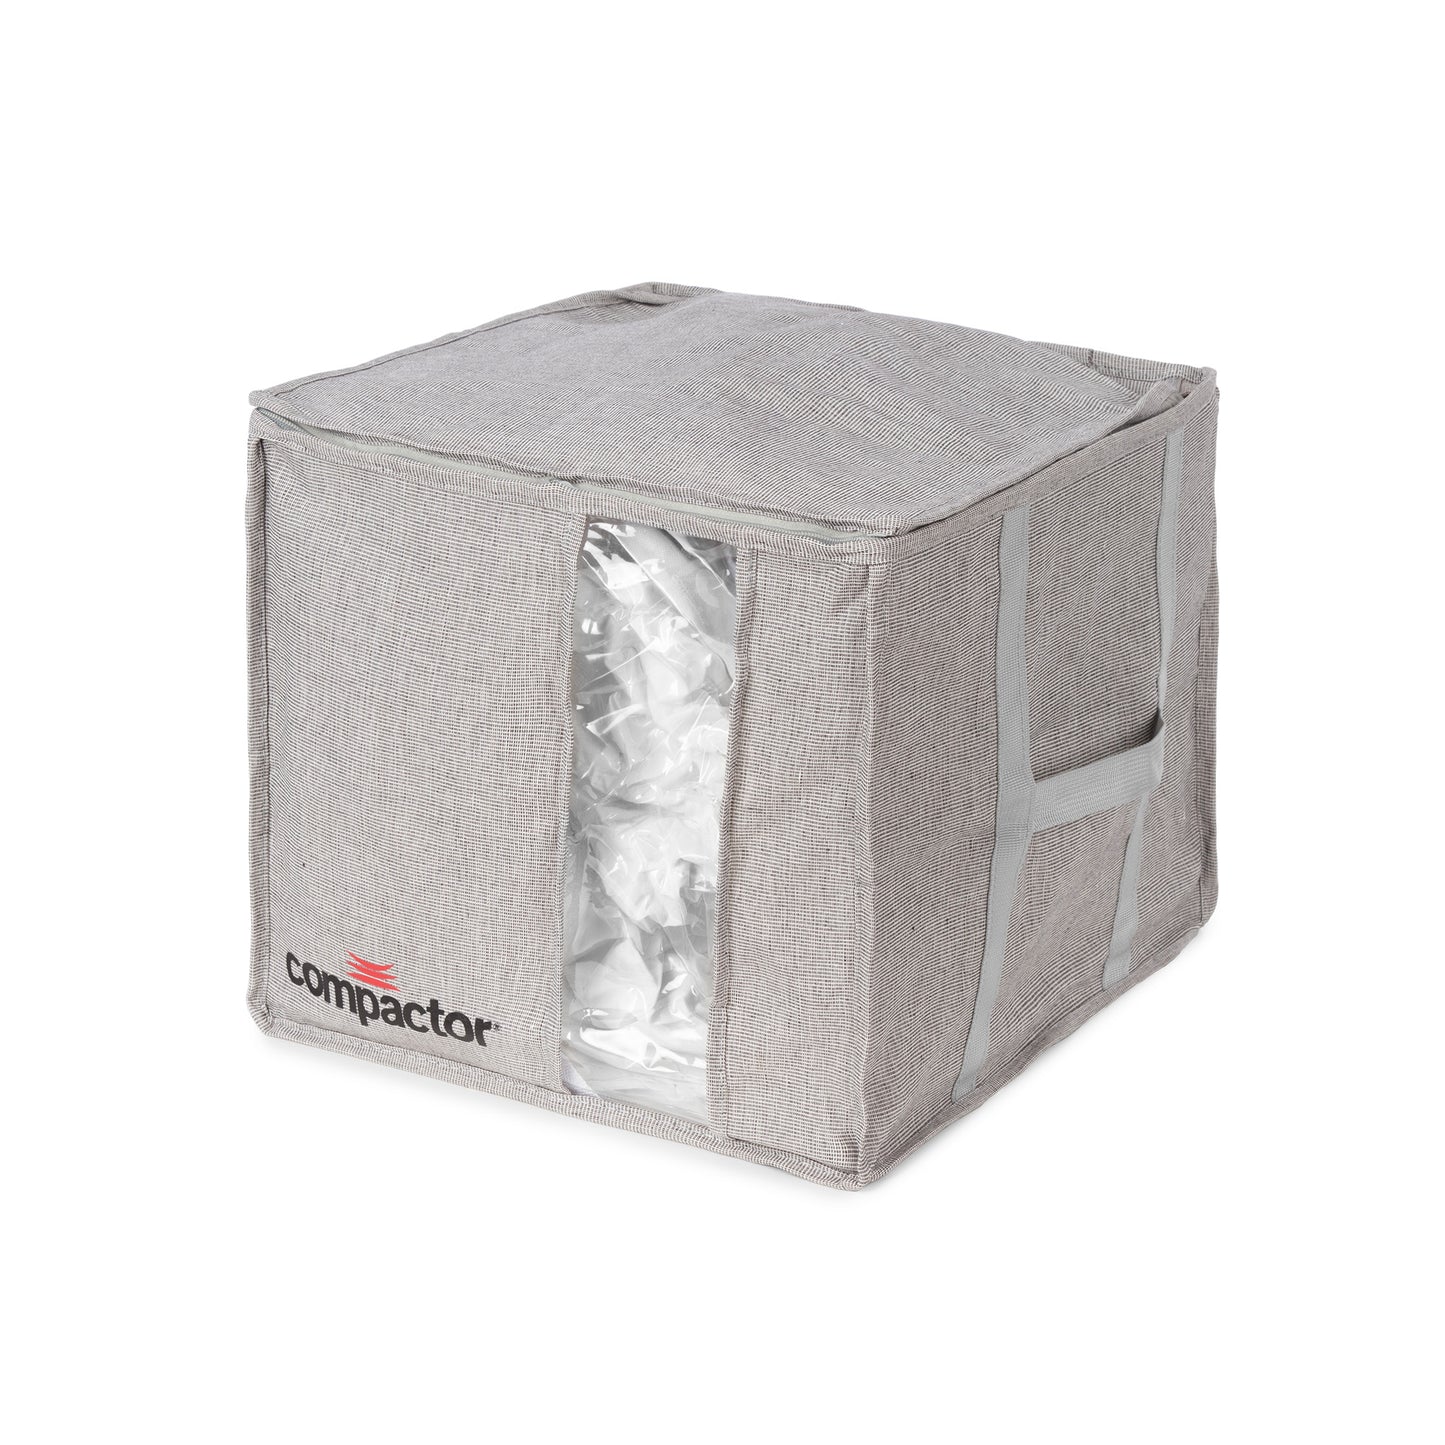 Caja de almacenamiento al vacío Compactor Oxford M gris